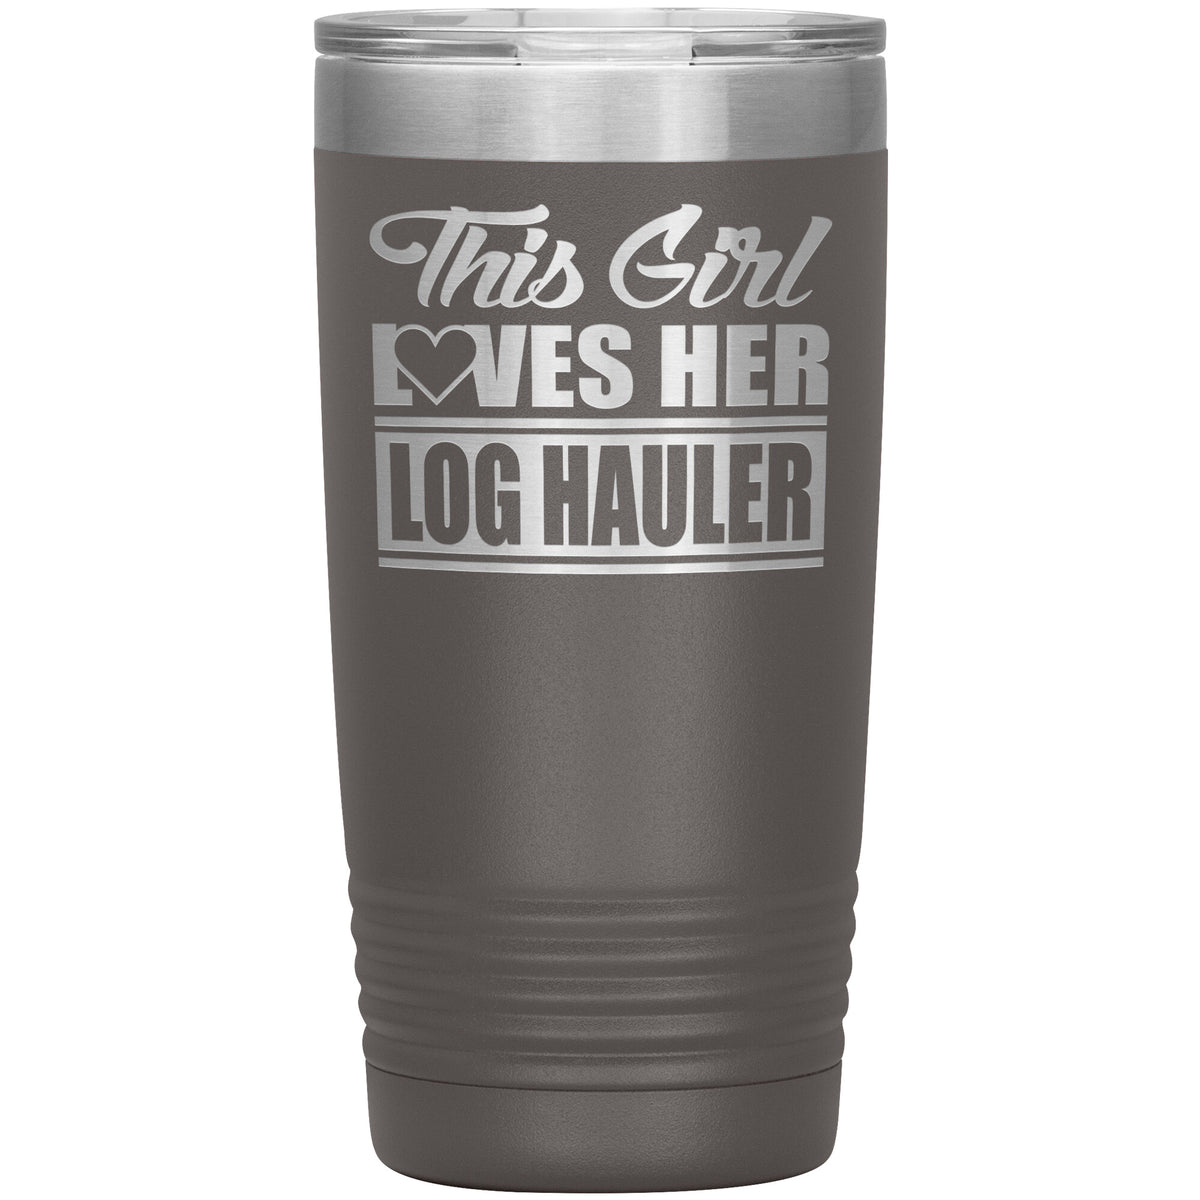 This Girl Loves Her - Log Hauler